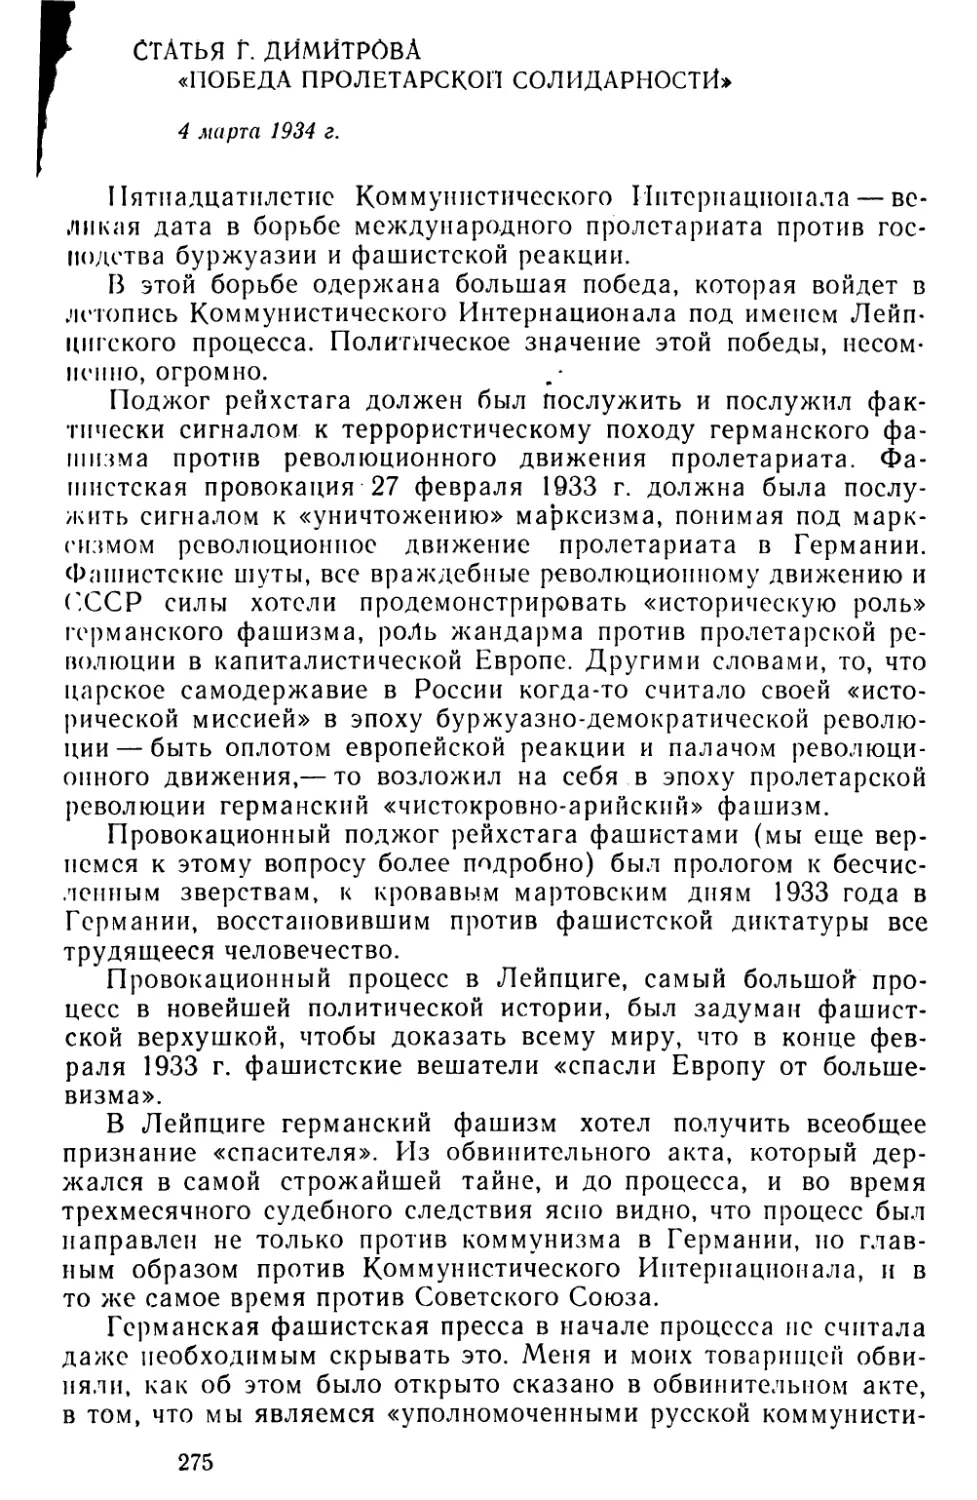 Статья Г. Димитрова «Победа пролетарской солидарности». 4 марта 1934 г